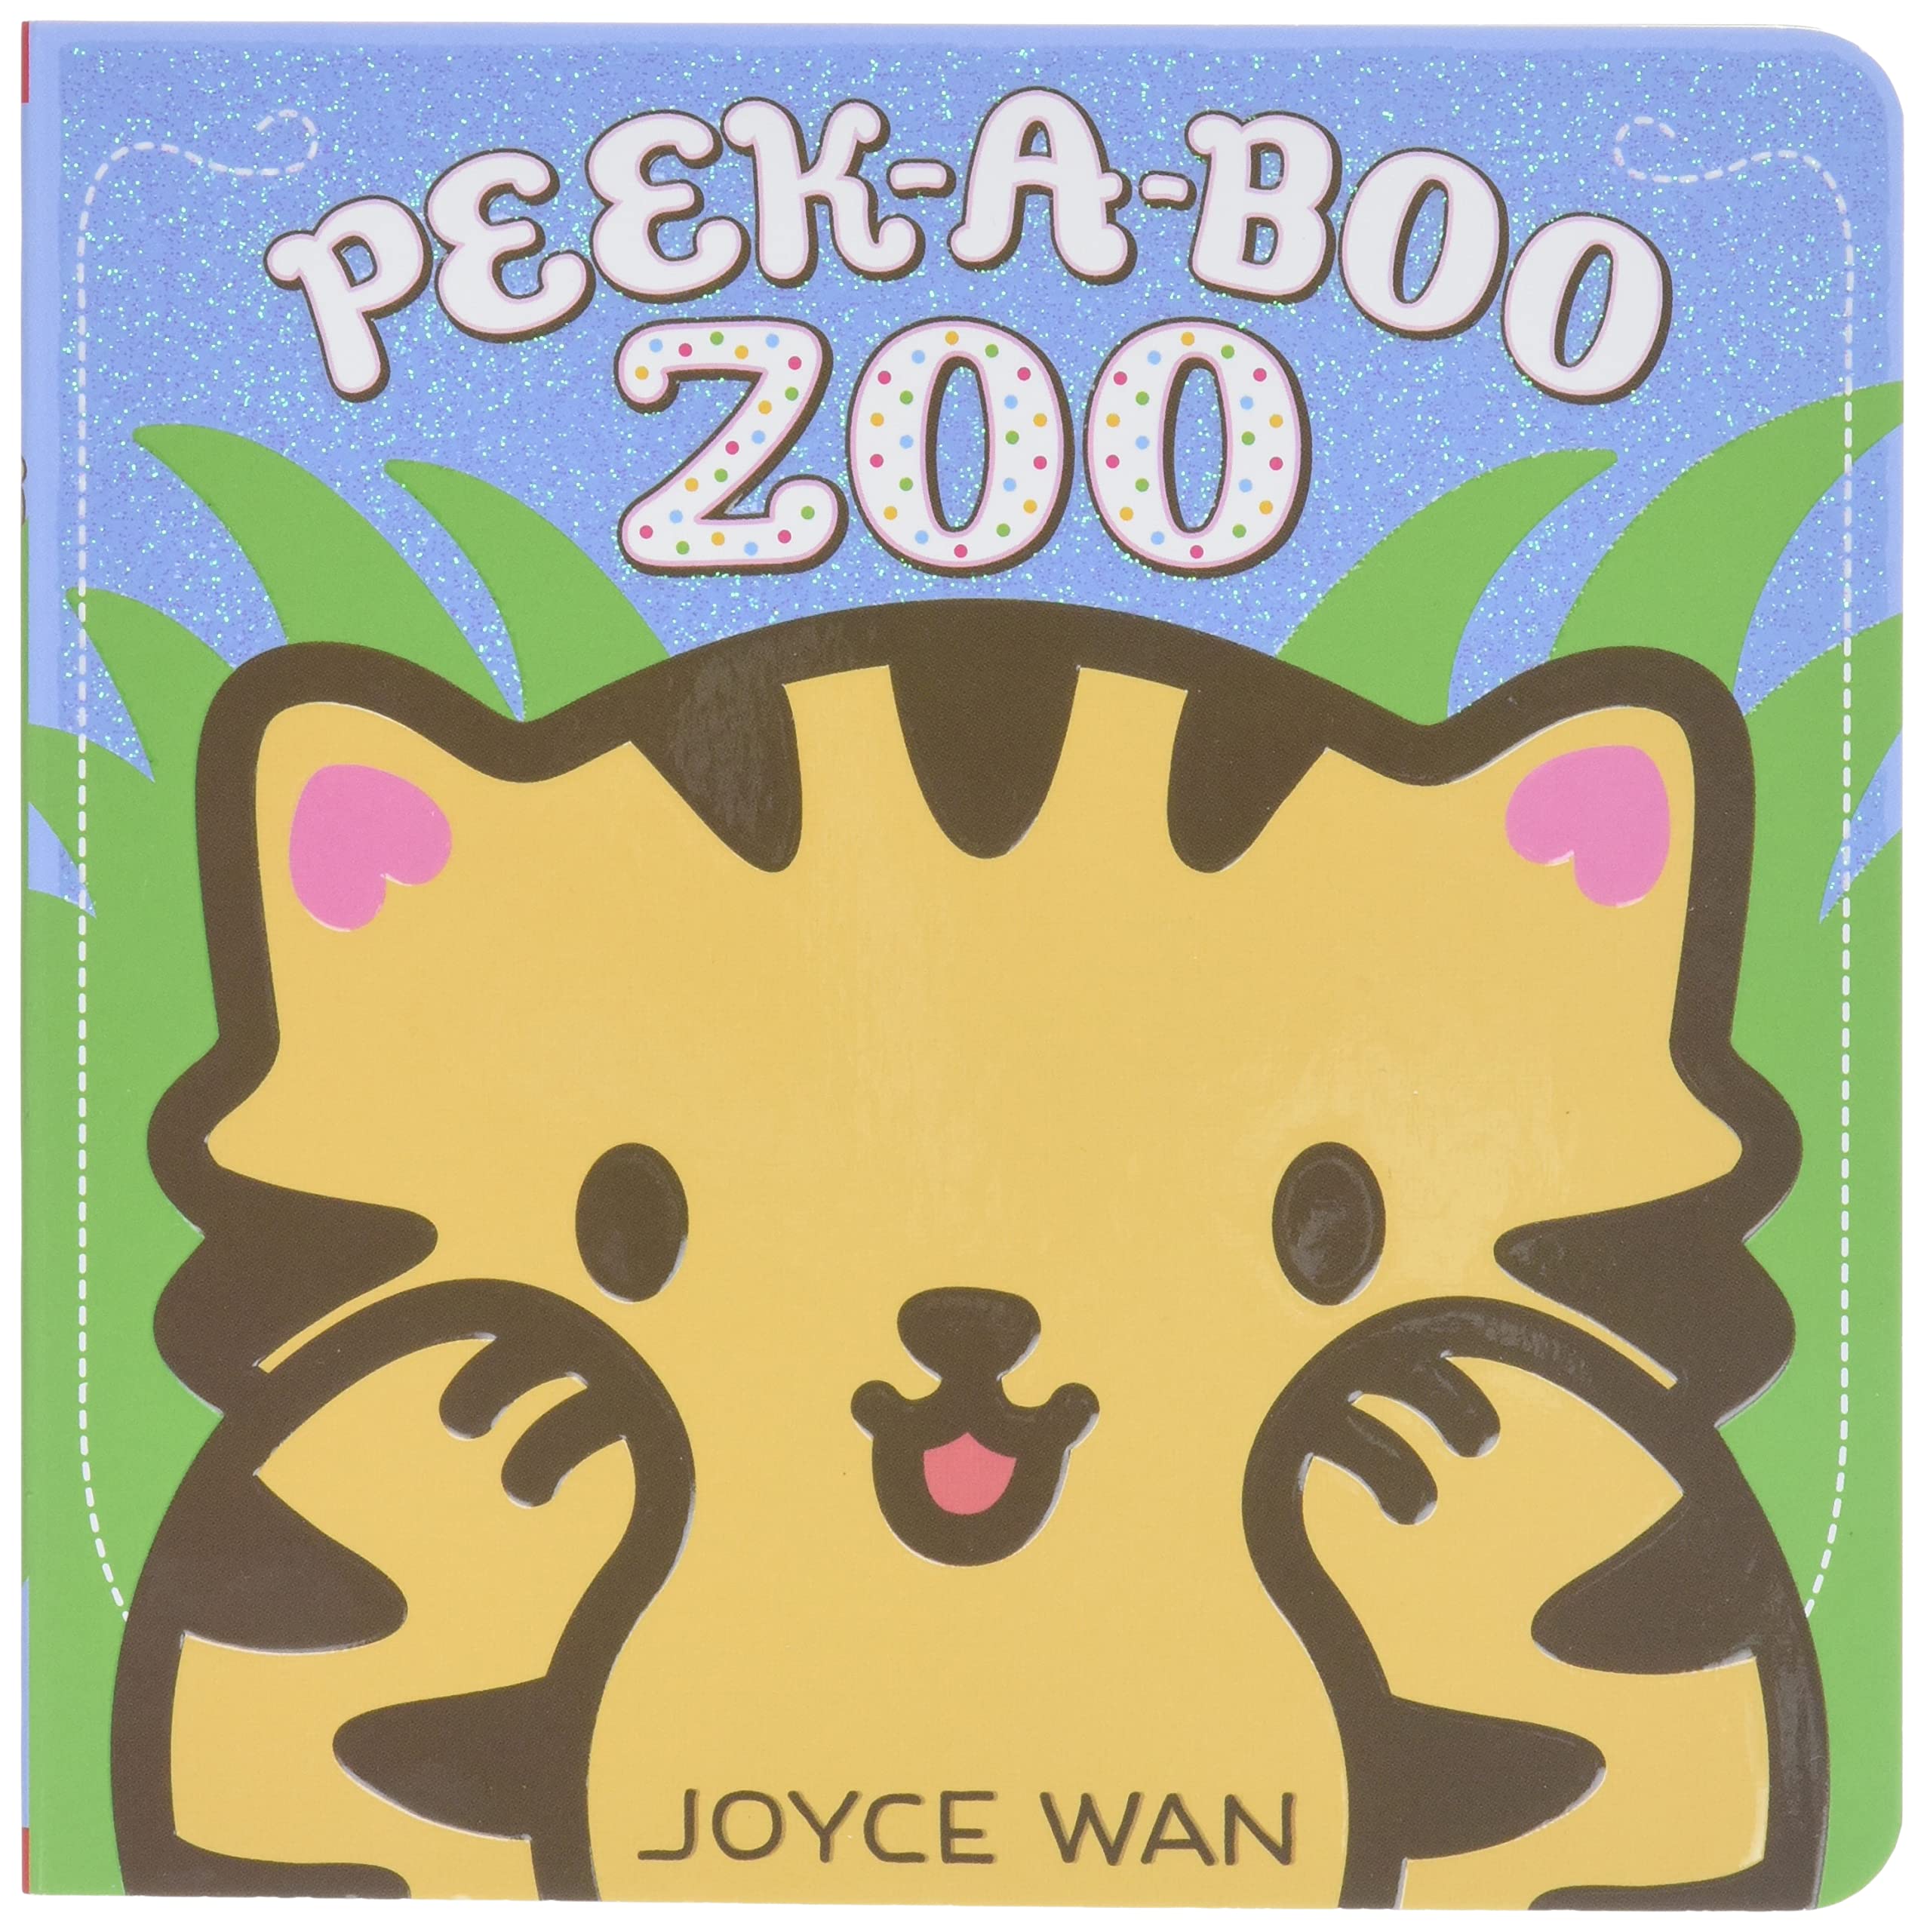 IMG : Peek-A-Boo Zoo